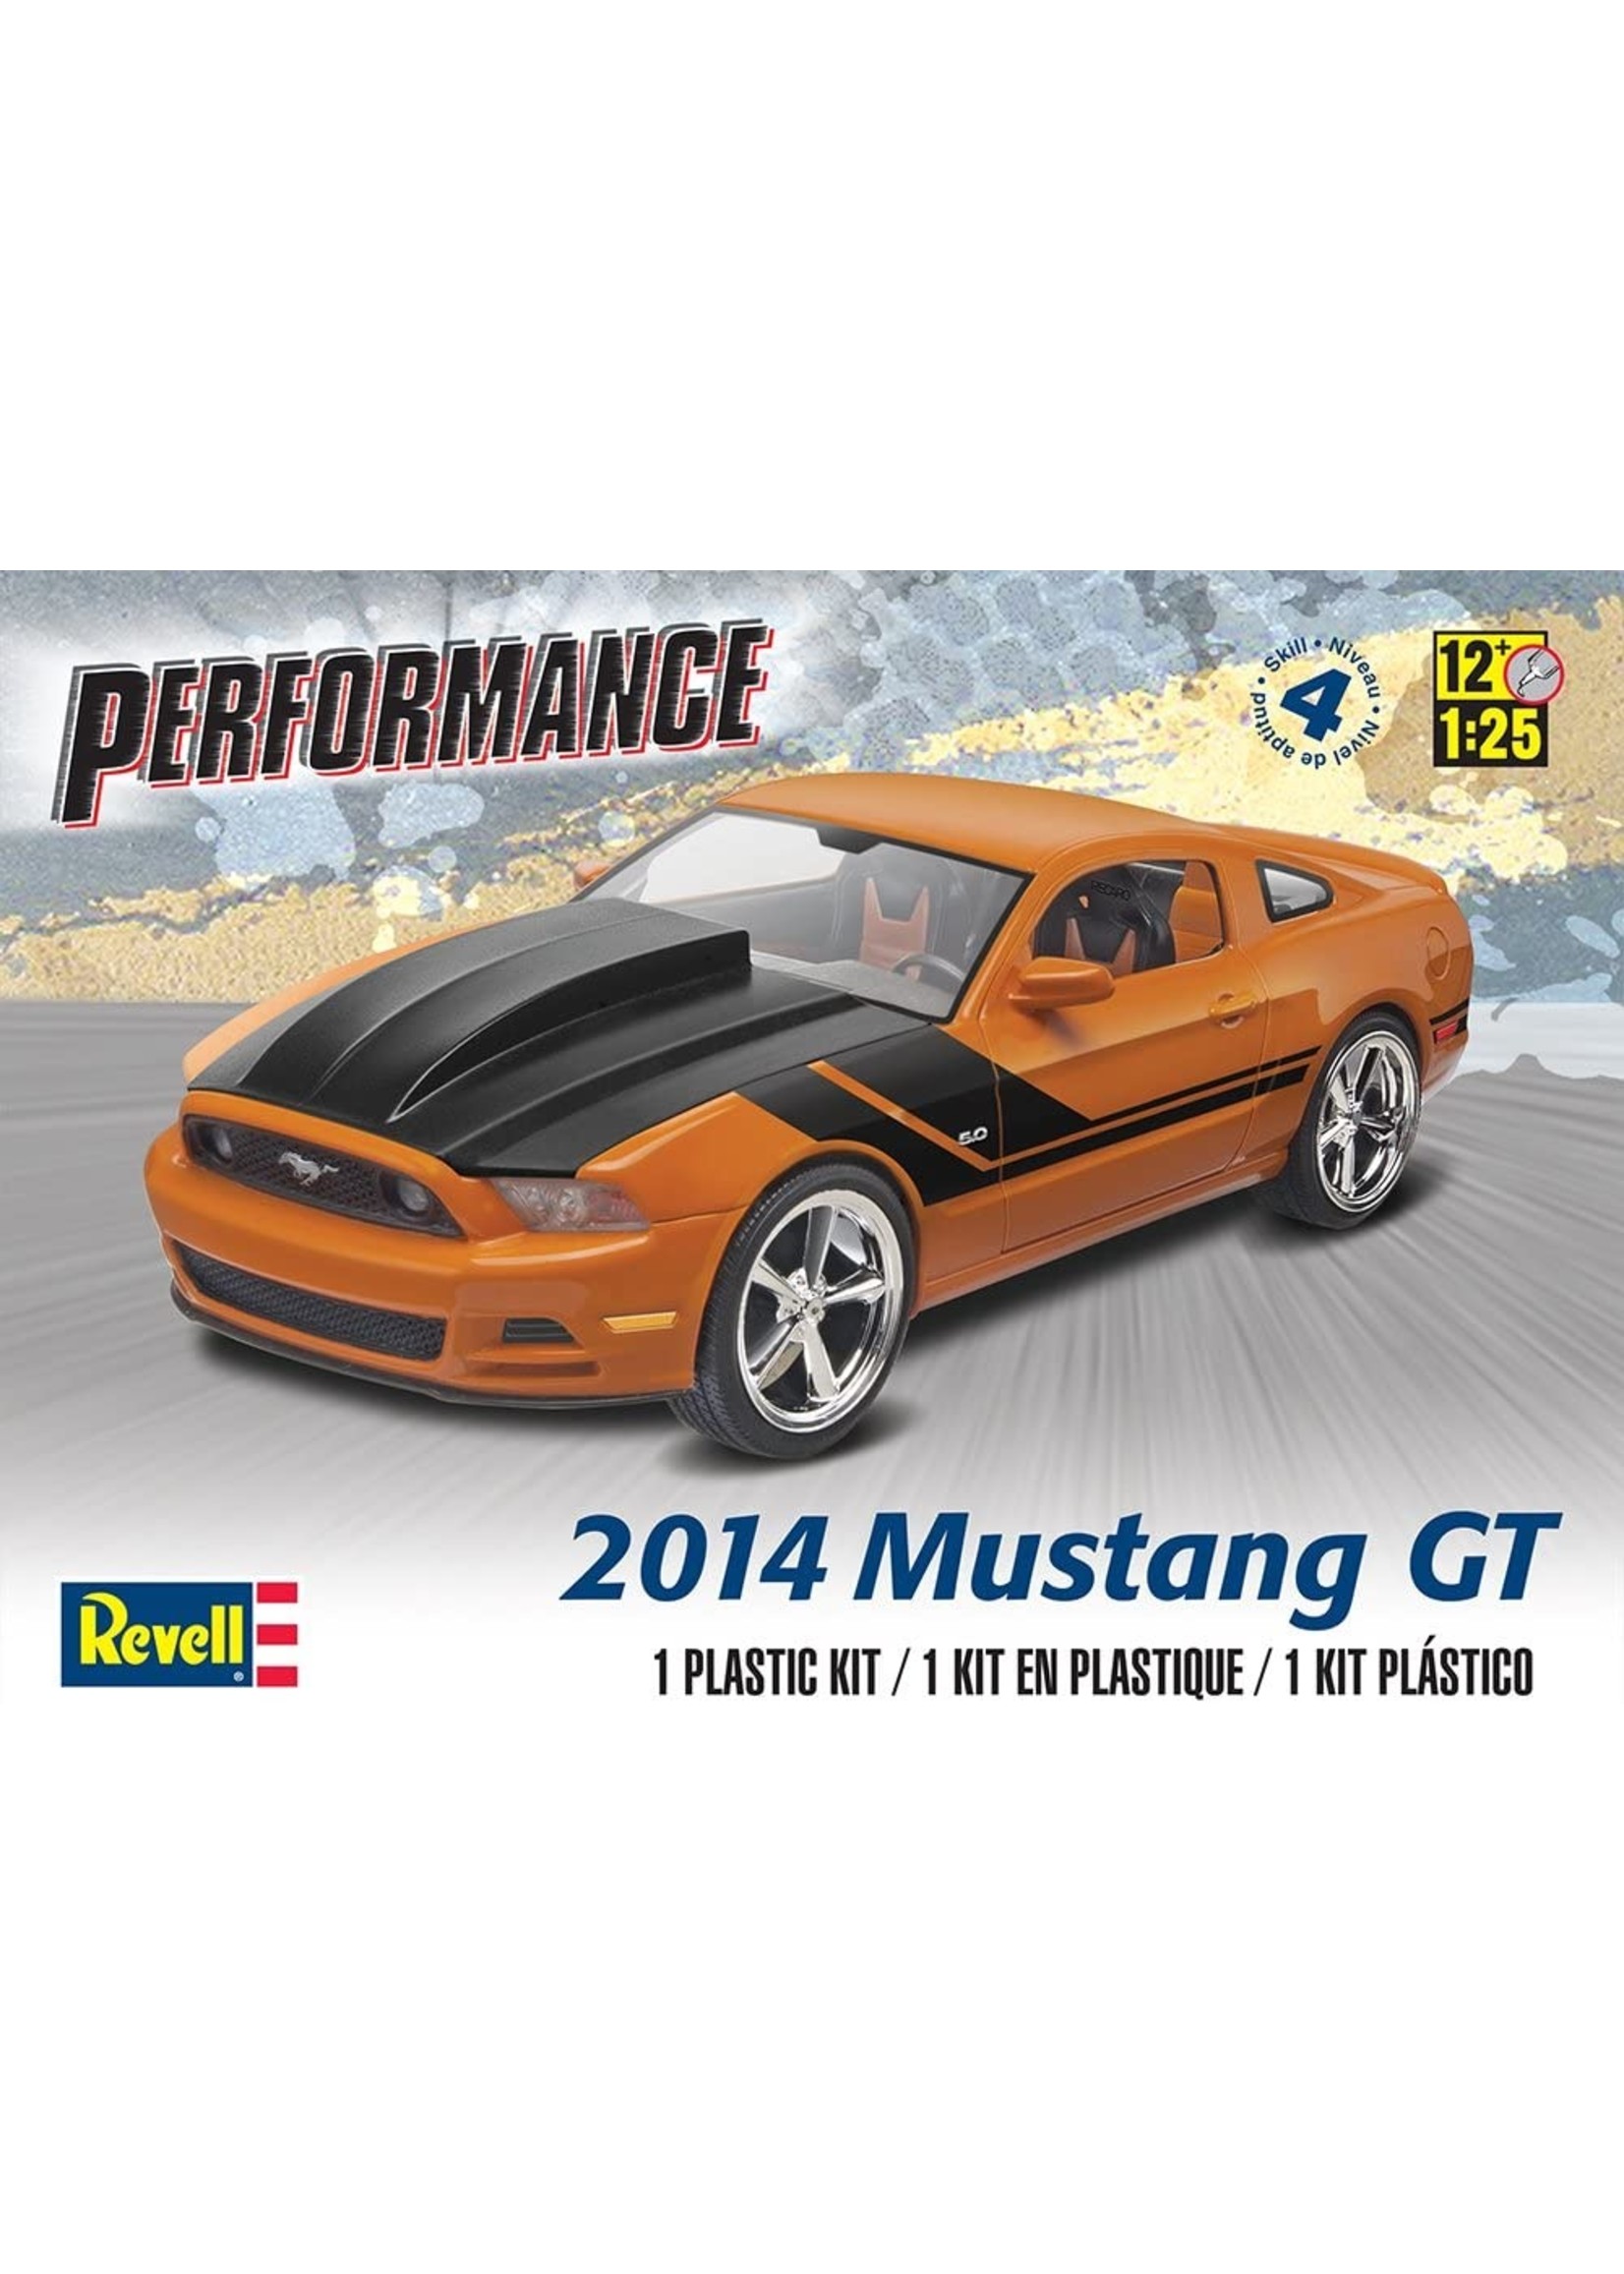 Maquette de Ford mustang 2014 au 1/24ème